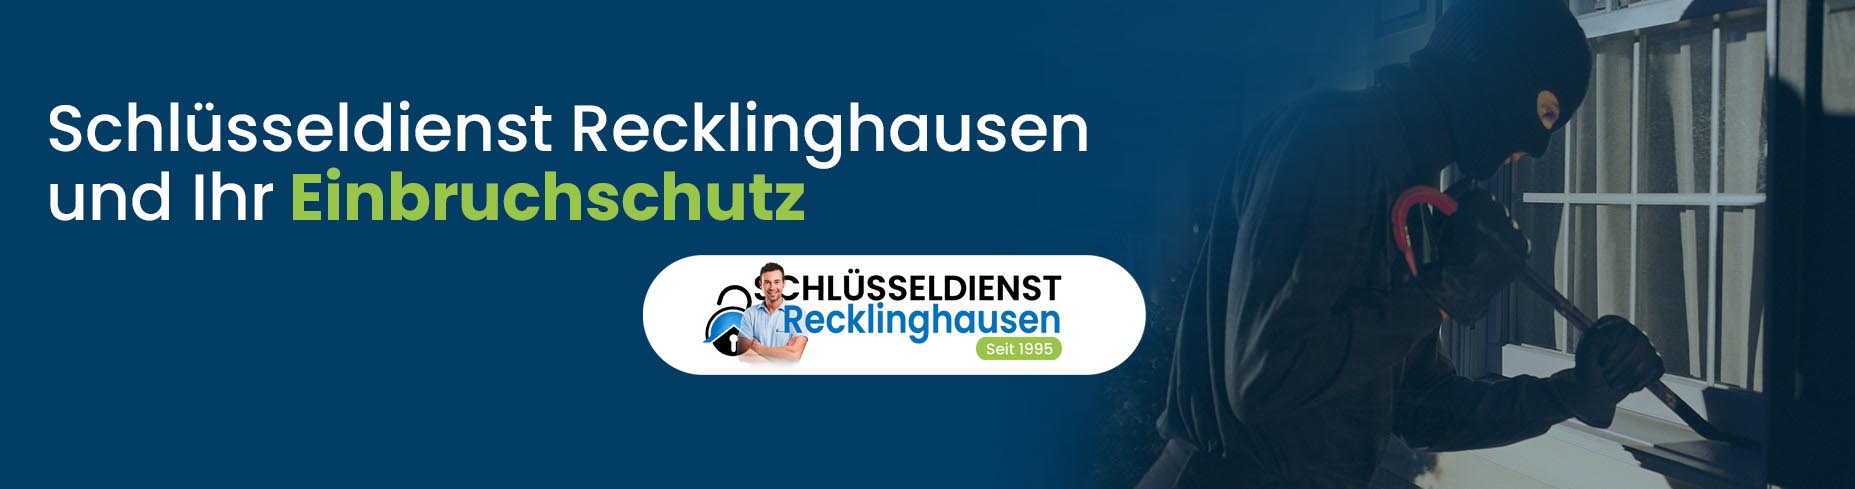 Schlüsseldienst Recklinghausen und Ihr Einbruchschutz